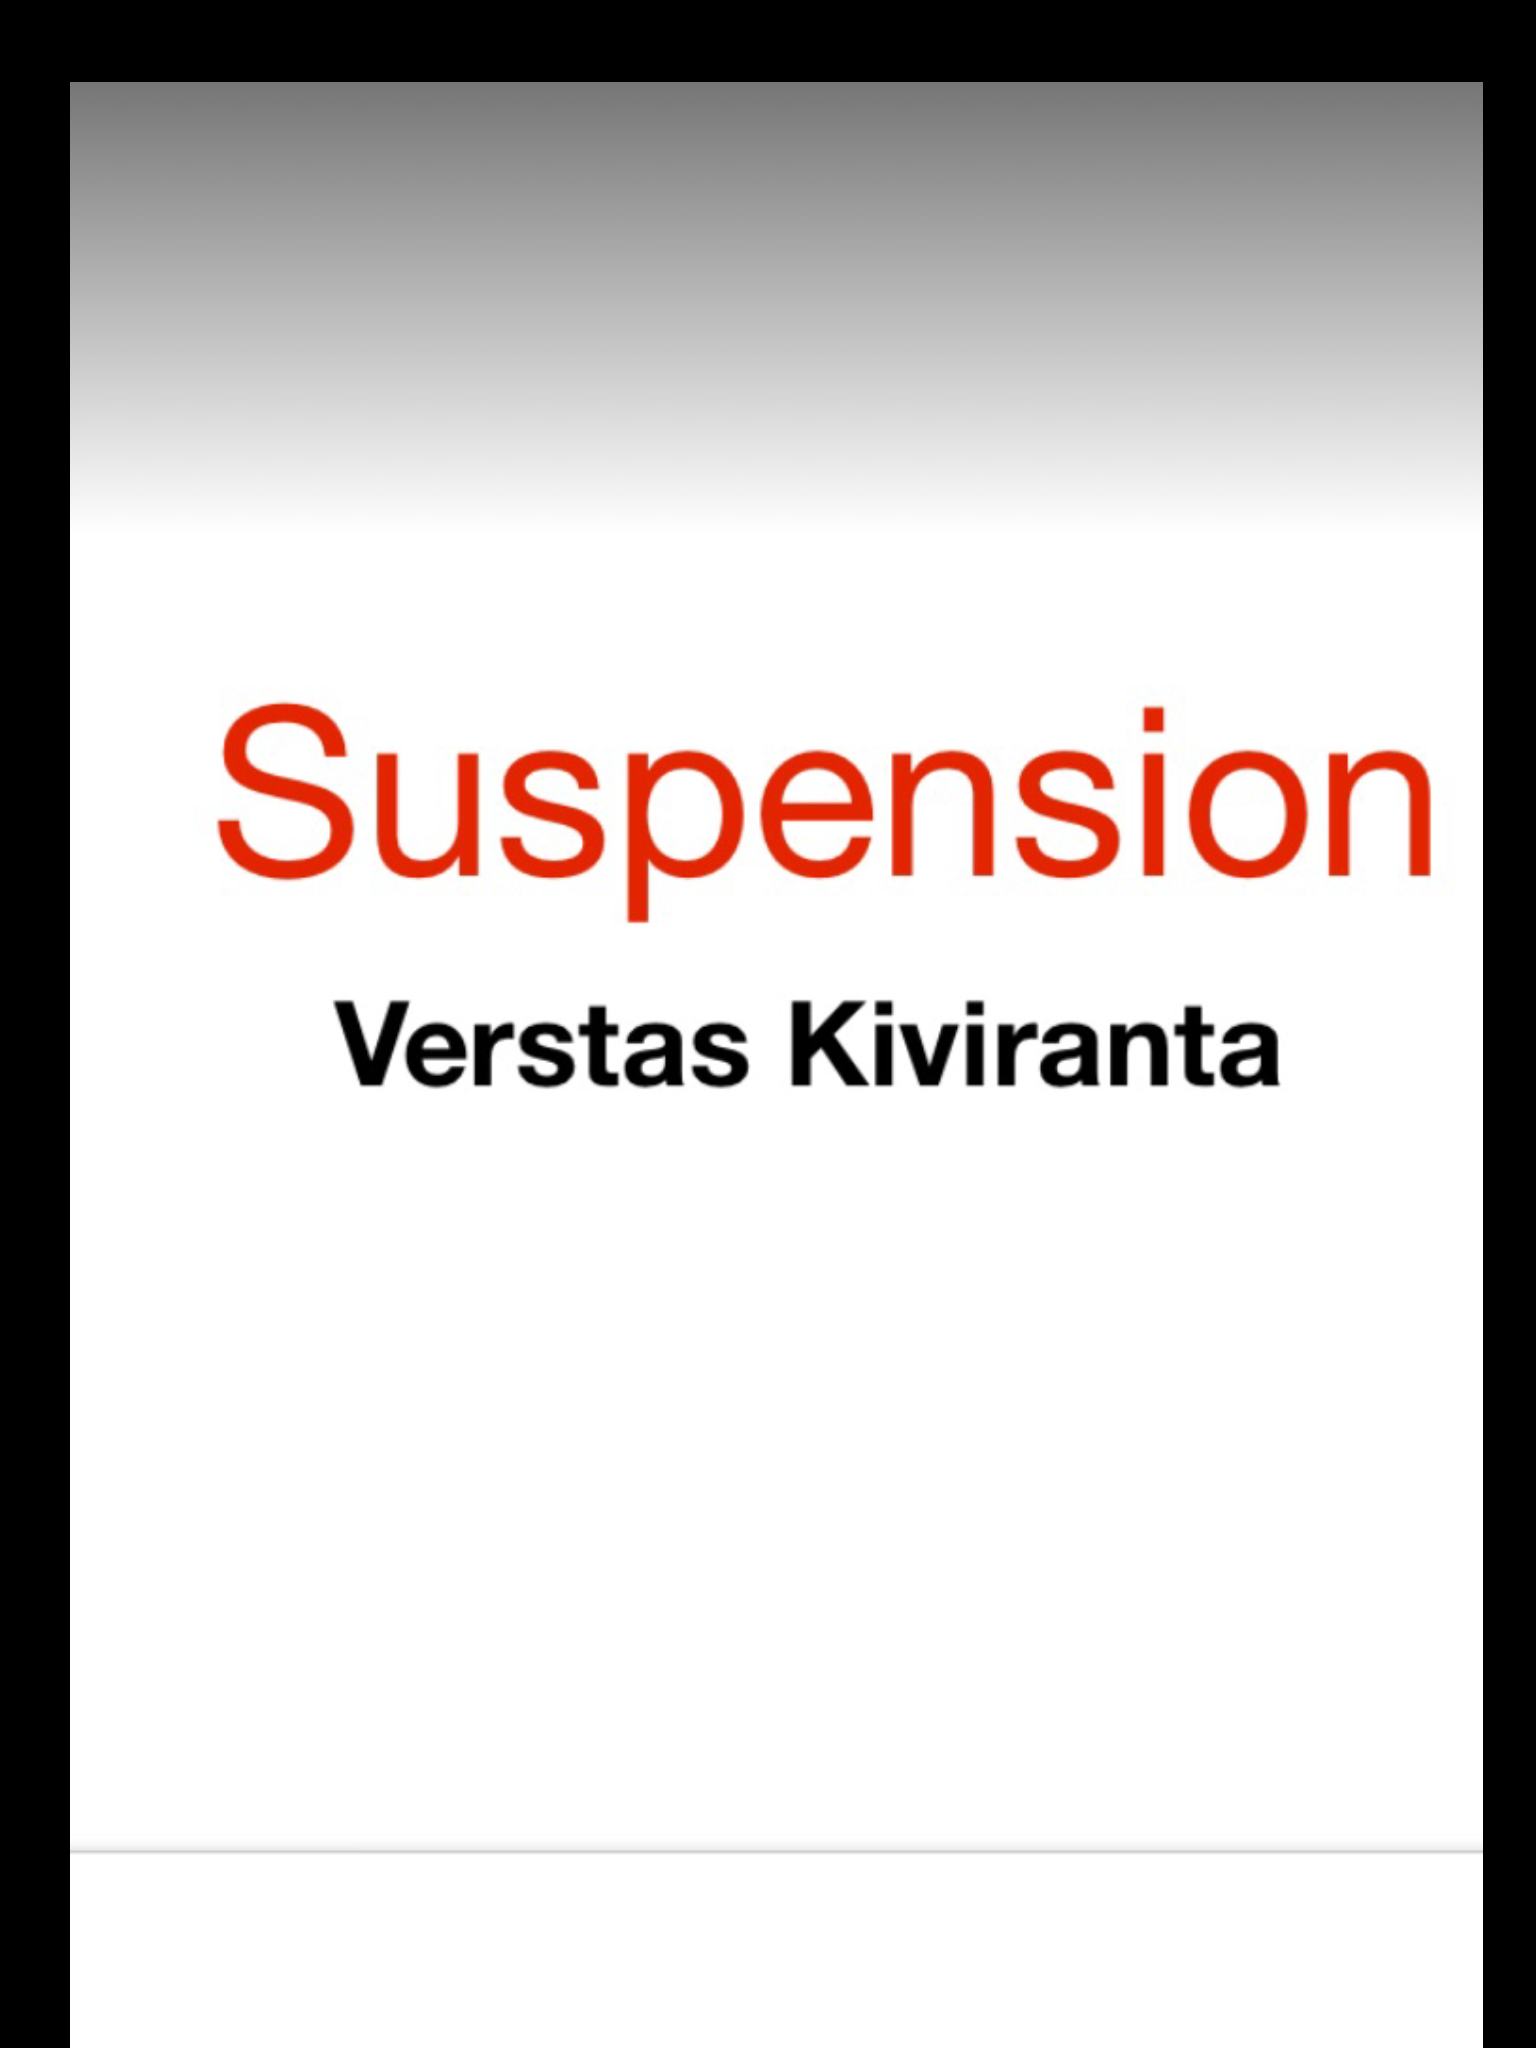 Suspension Verstas Kiviranta